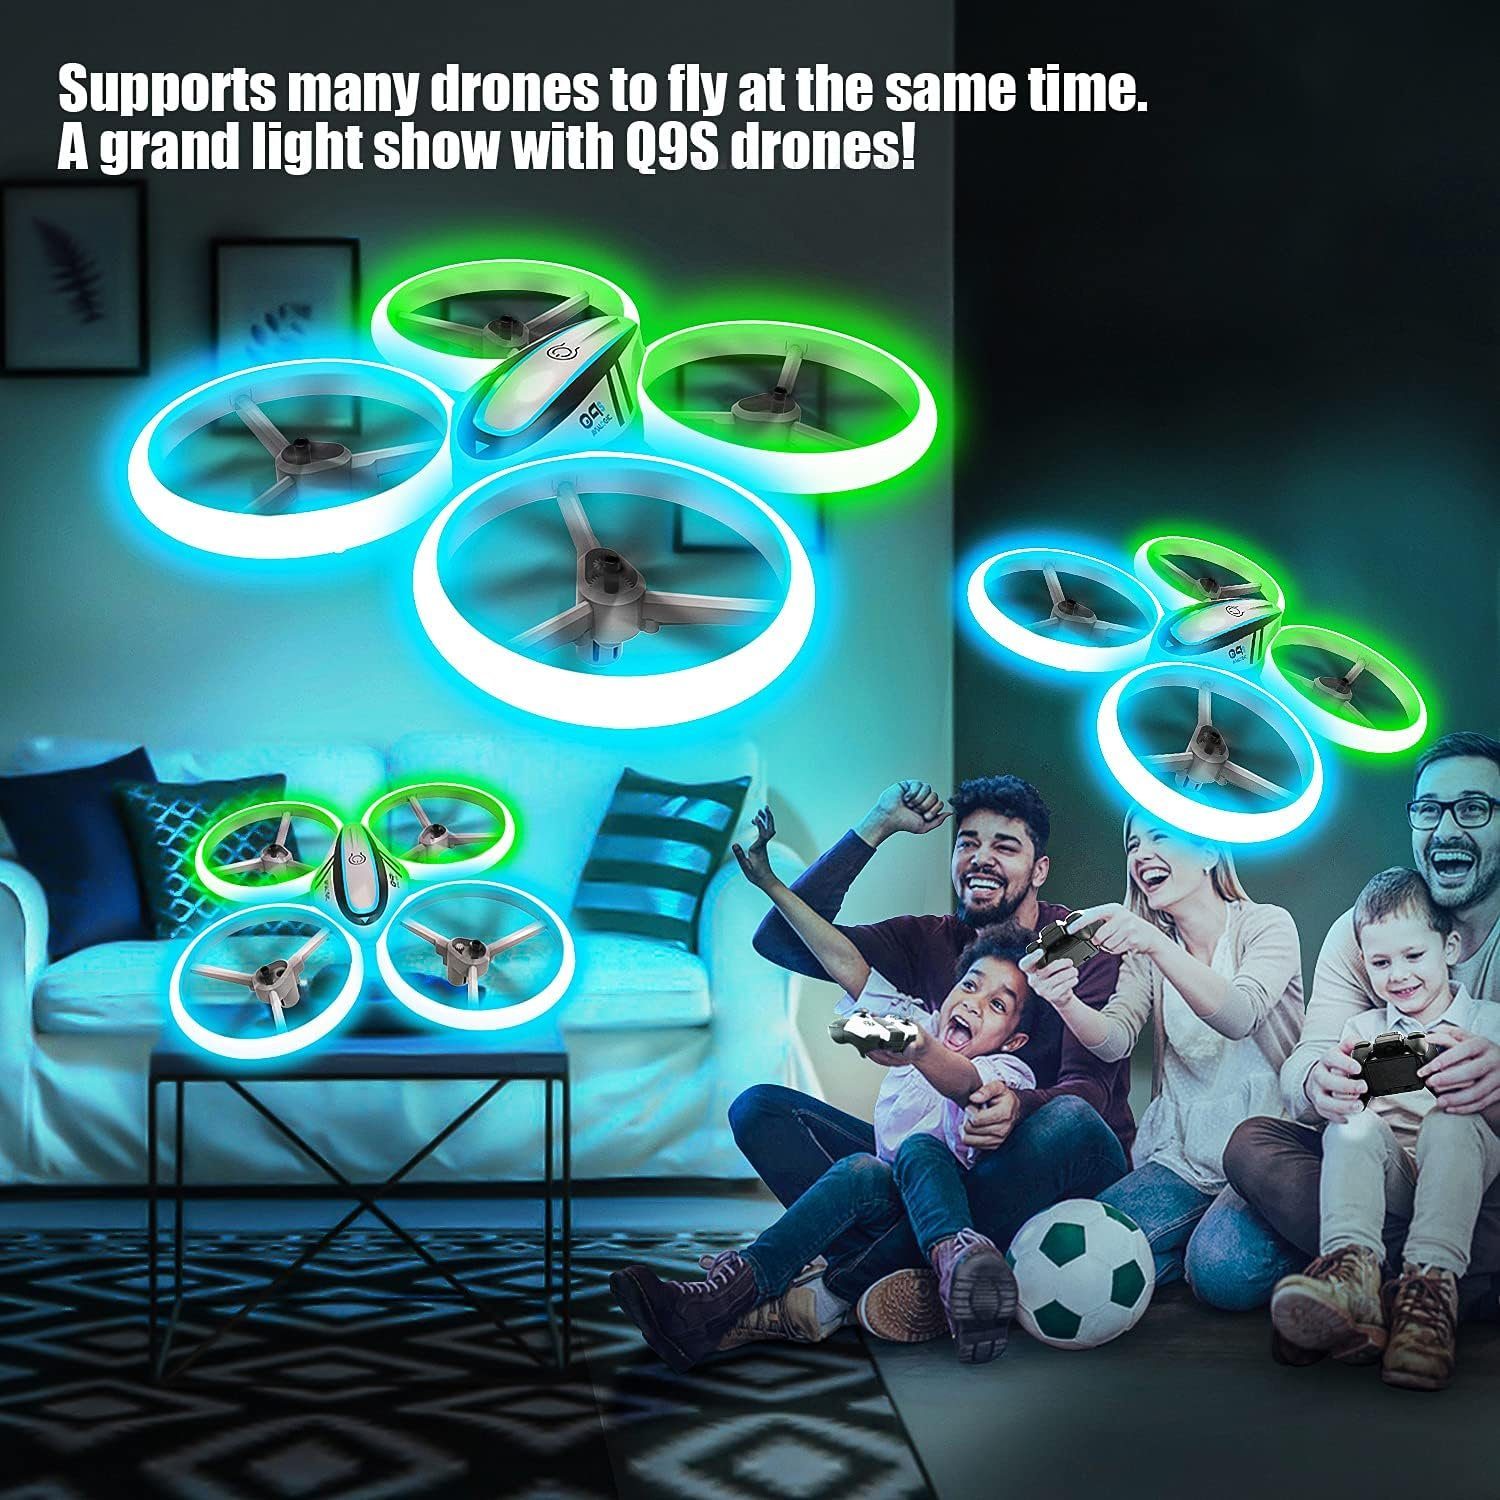 Drohne (Kinderdrohne Akkus) 2 & Grünlicht, Kopflosmodus, Höhenhalt, mit AVIALOGIC Blau